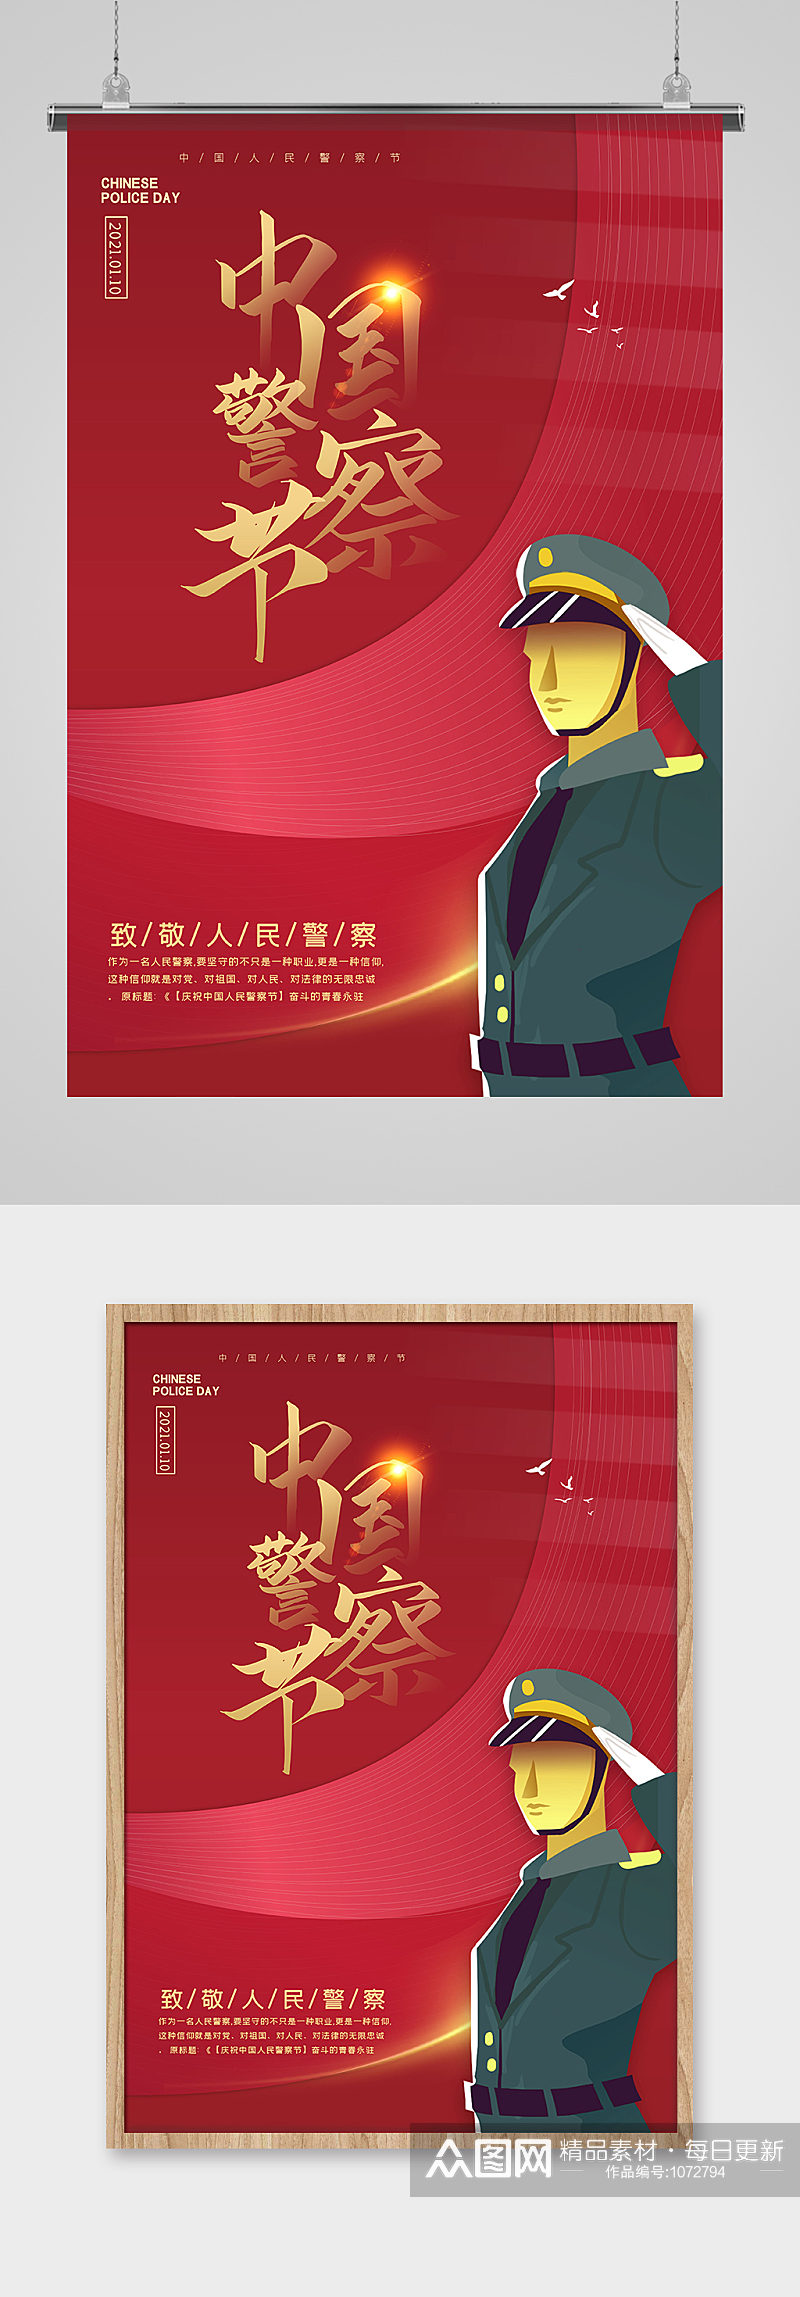 红色大气中国警察节海报素材